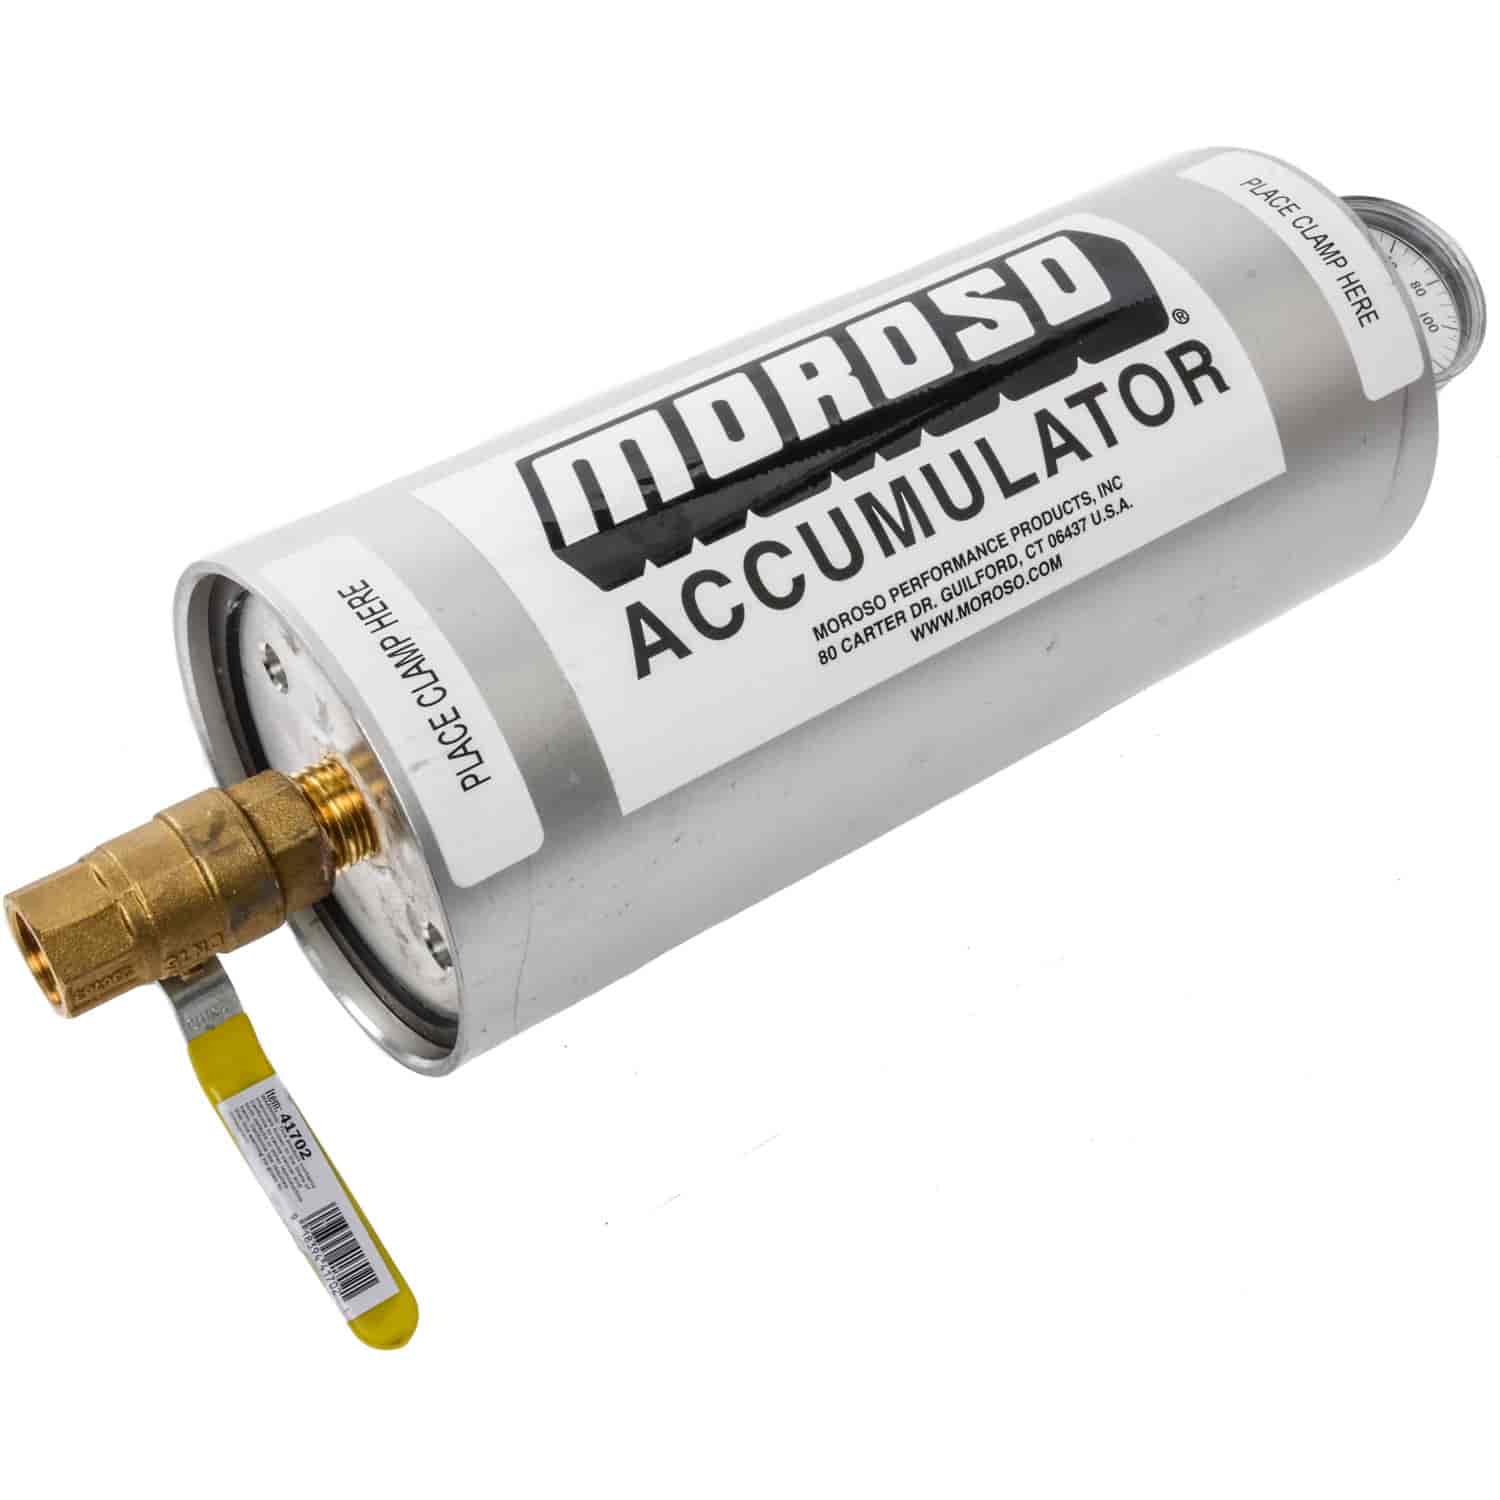 Oil Accumulator Capacity: 1.5 quarts